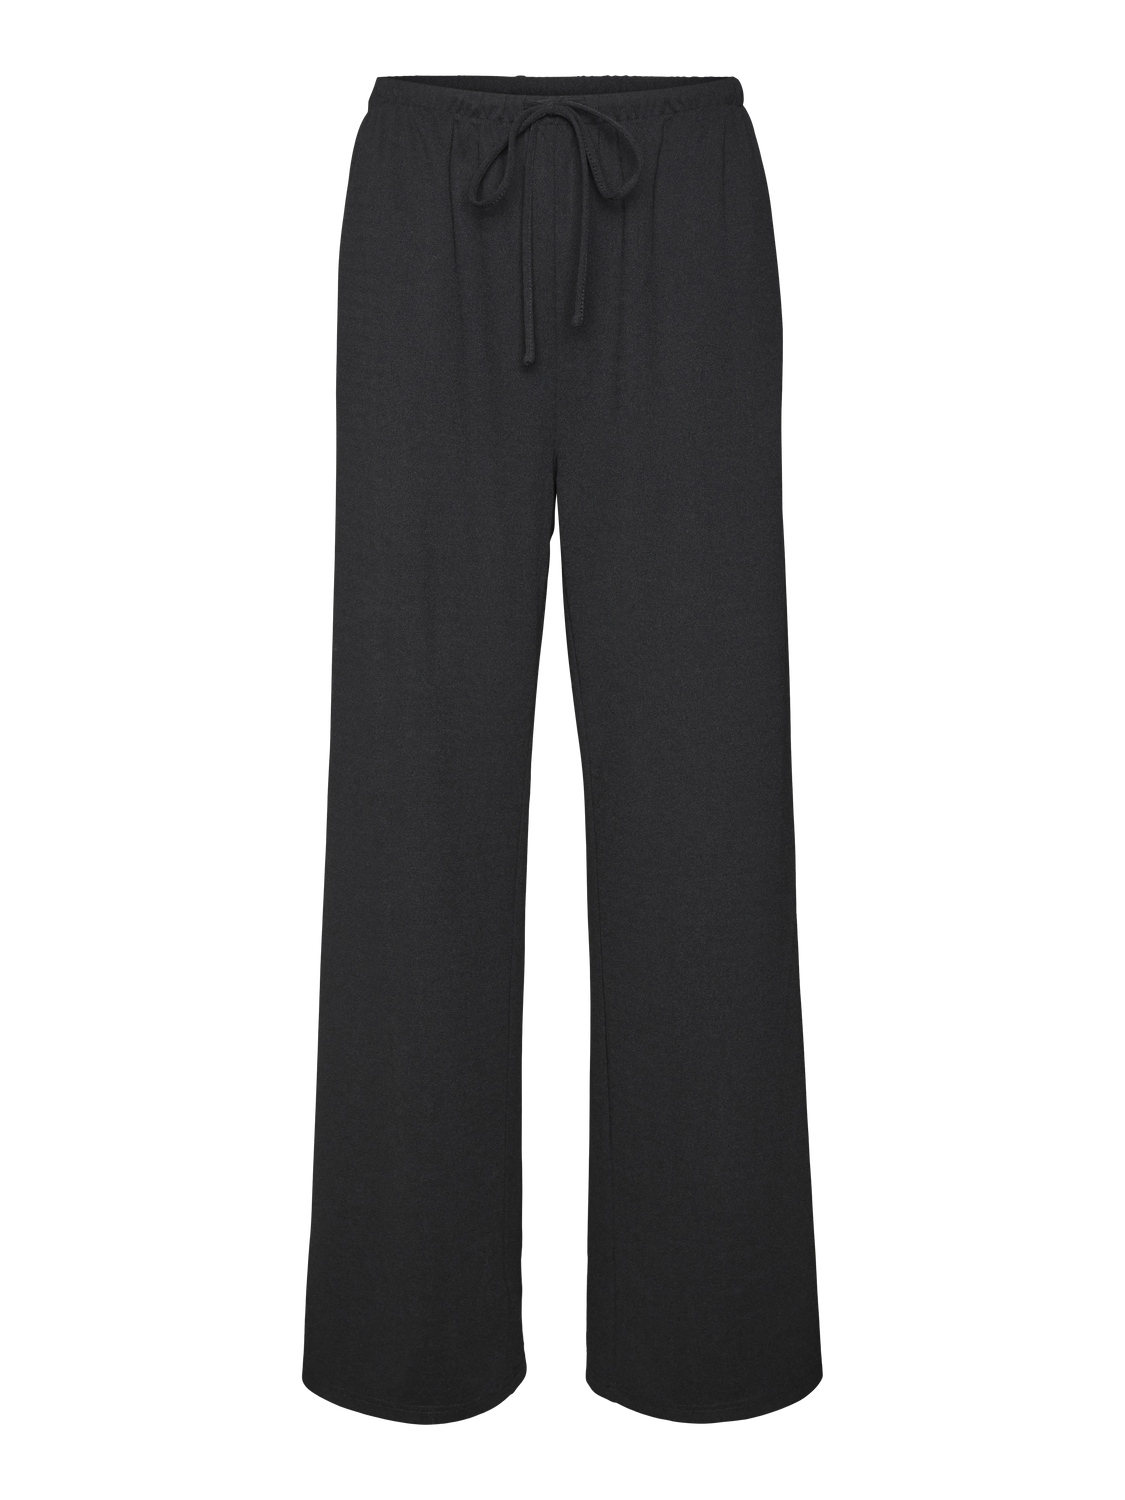 Vero Moda VMLIVA Cintura alta Pantalones -Black - 10321279